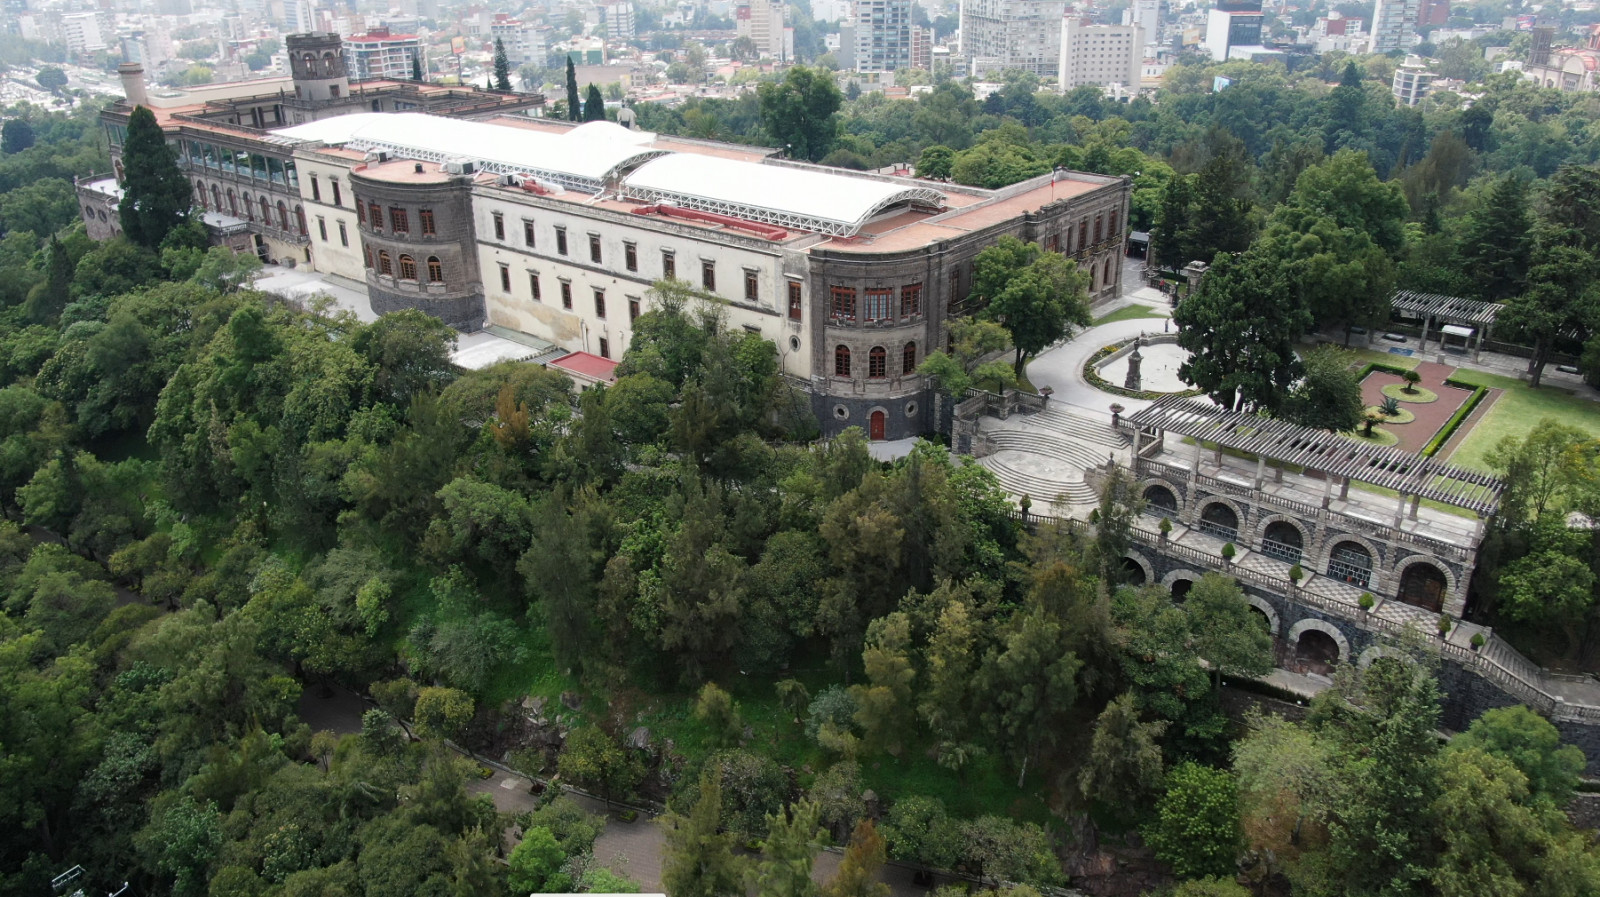 Museo Nacional de Historia Castillo de Chapultepec